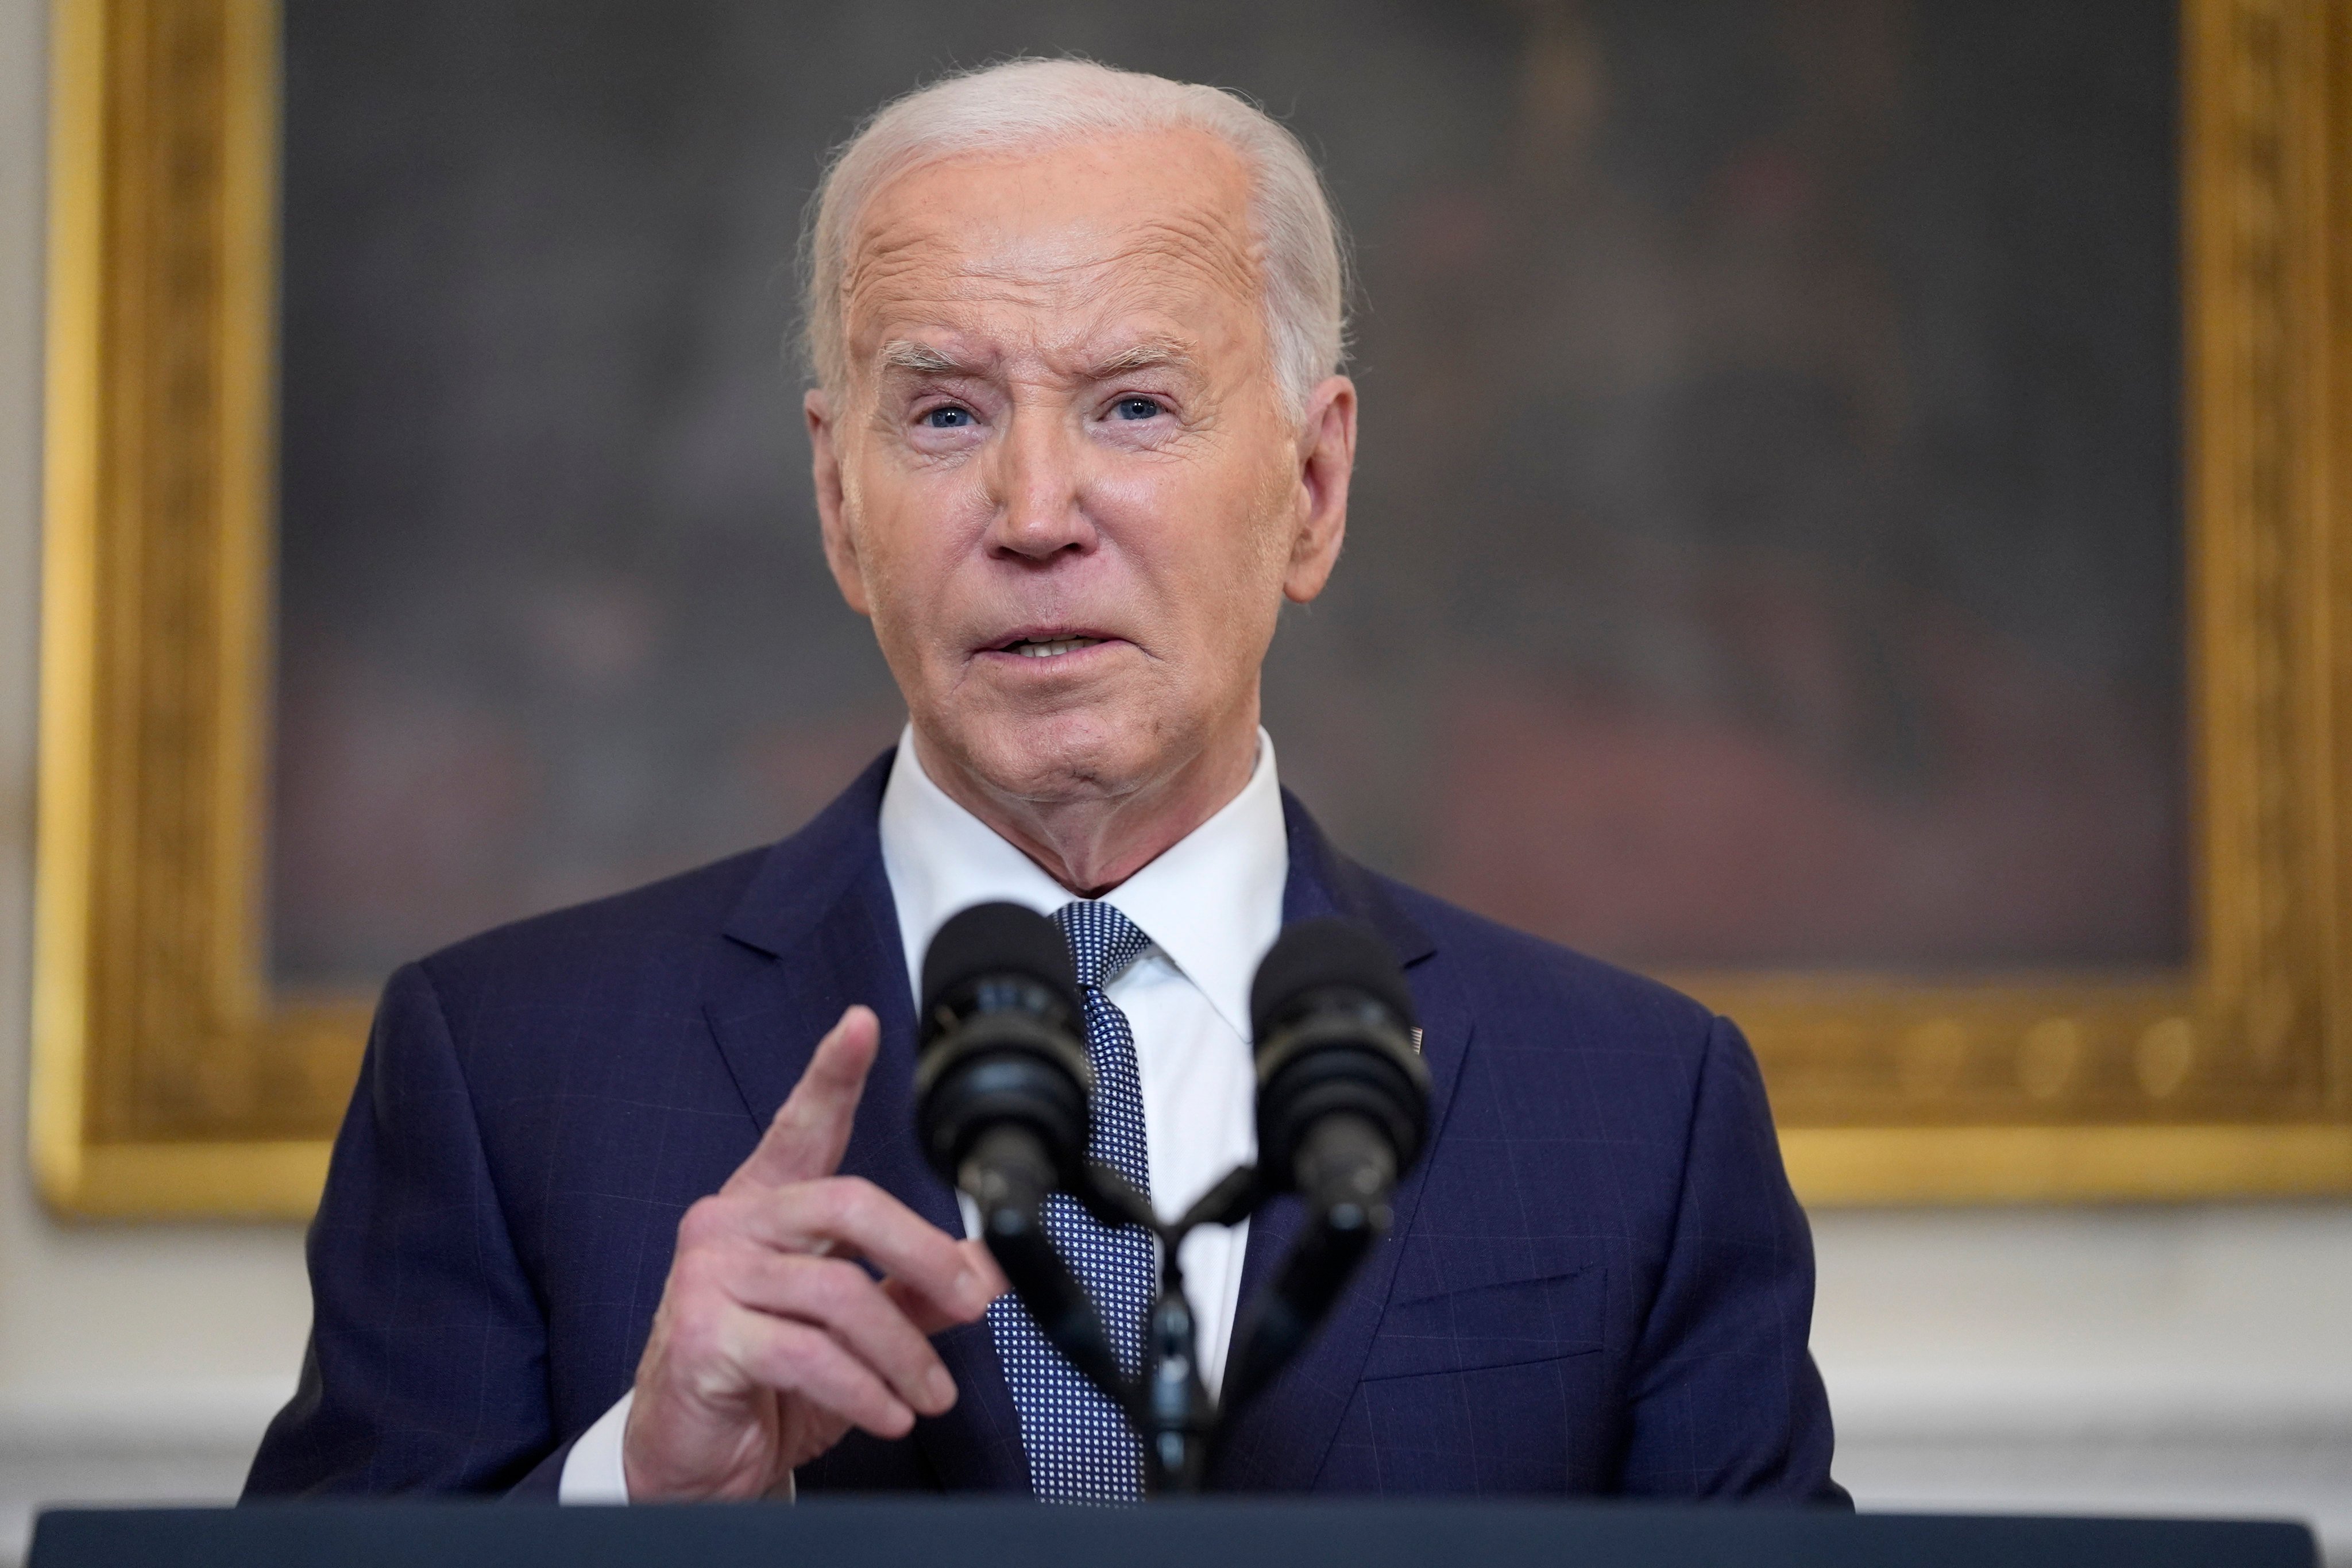 US President Joe Biden speaks at the White House on Friday. Photo: AP